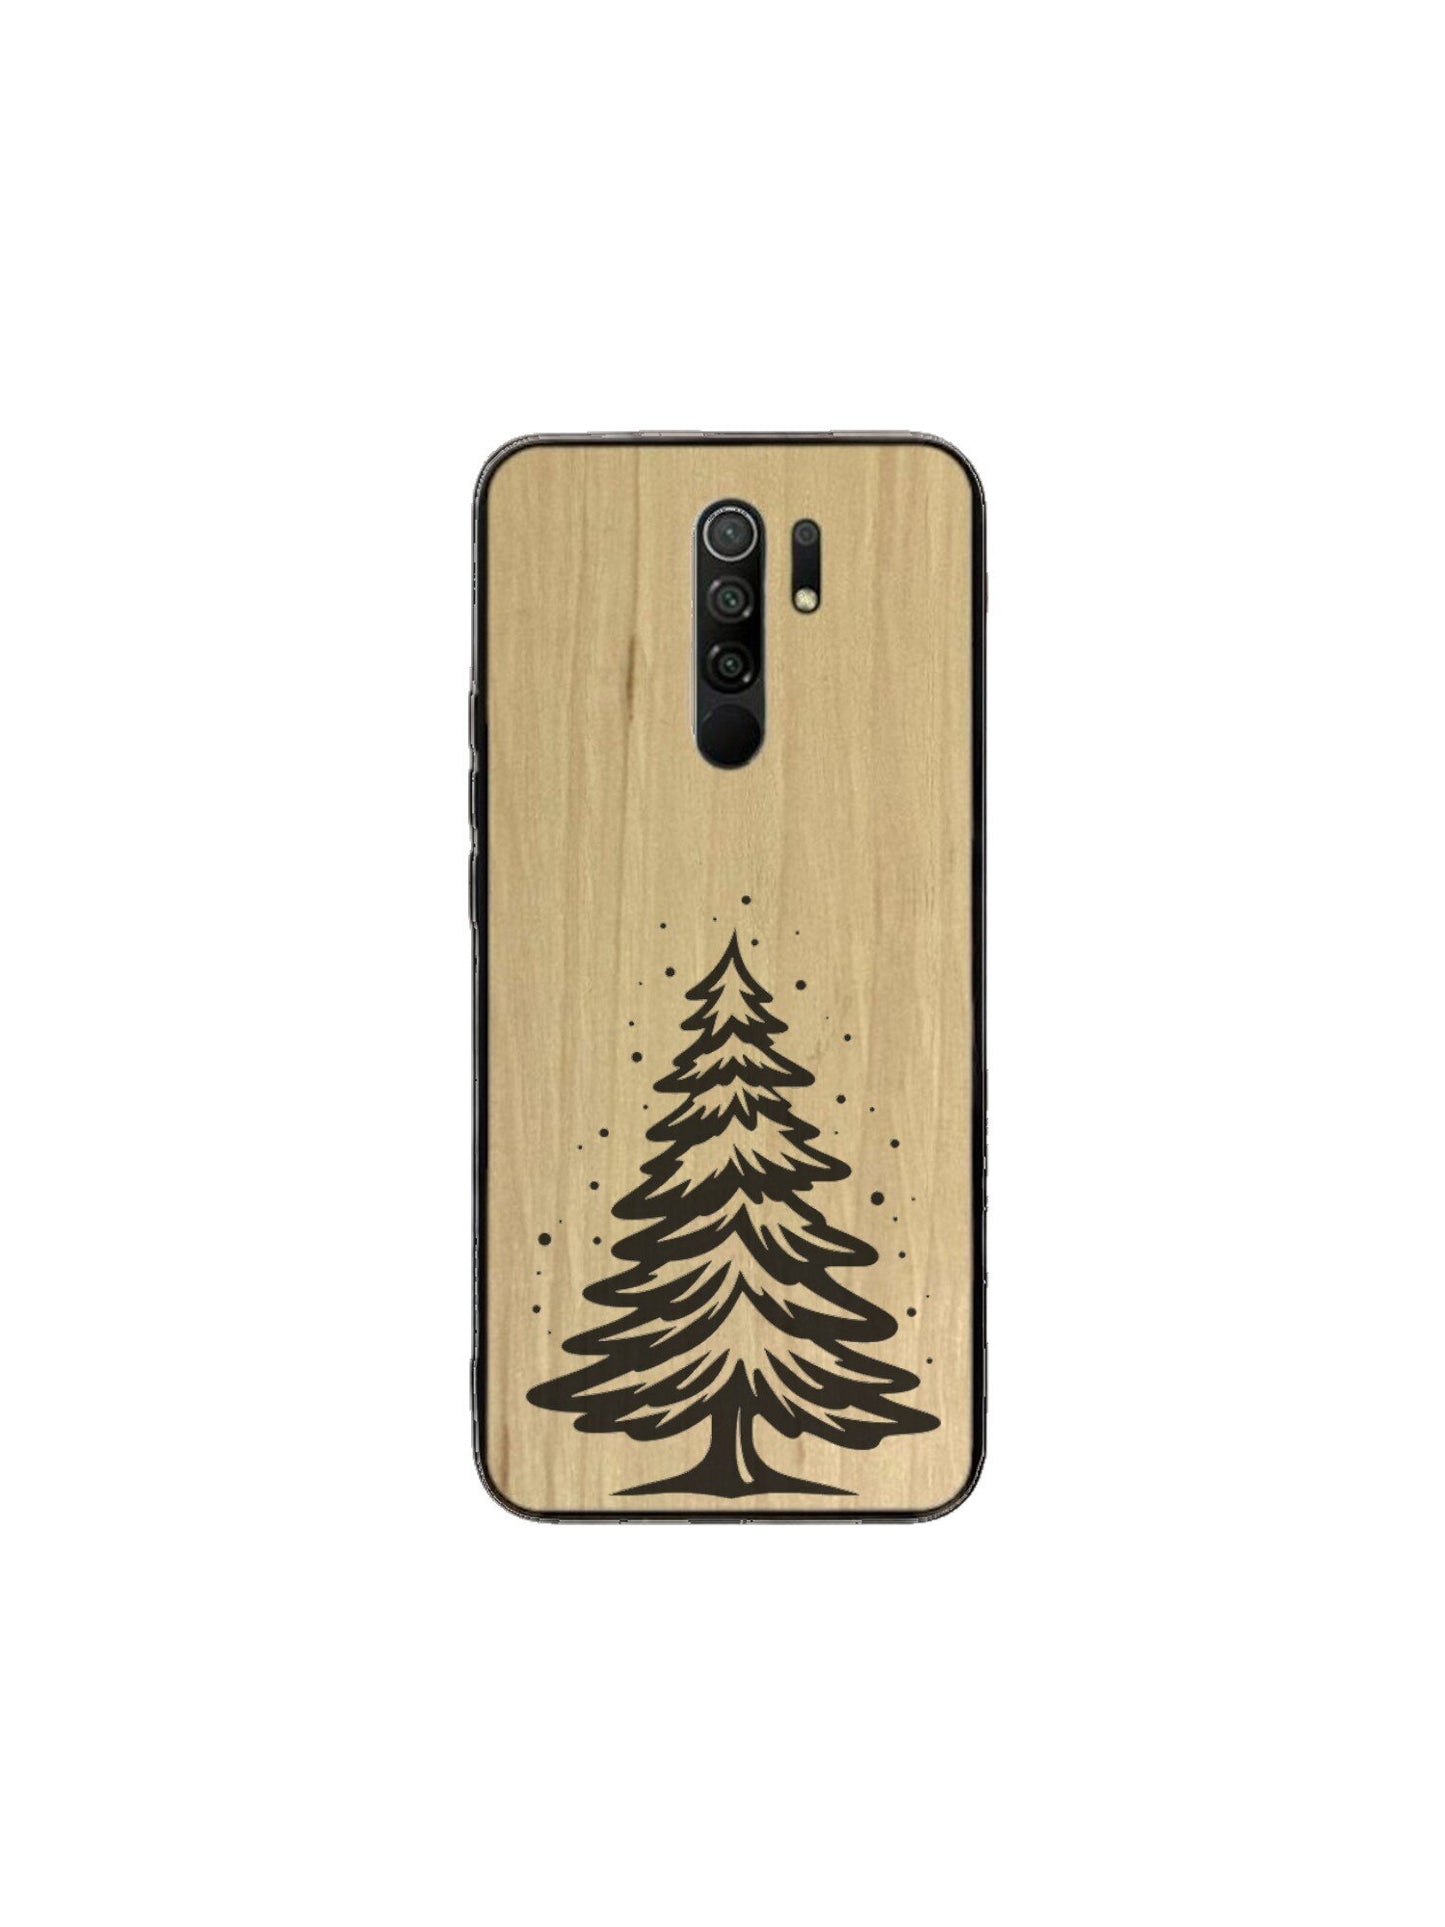 Xiaomi Redmi Case - Christmas Tree